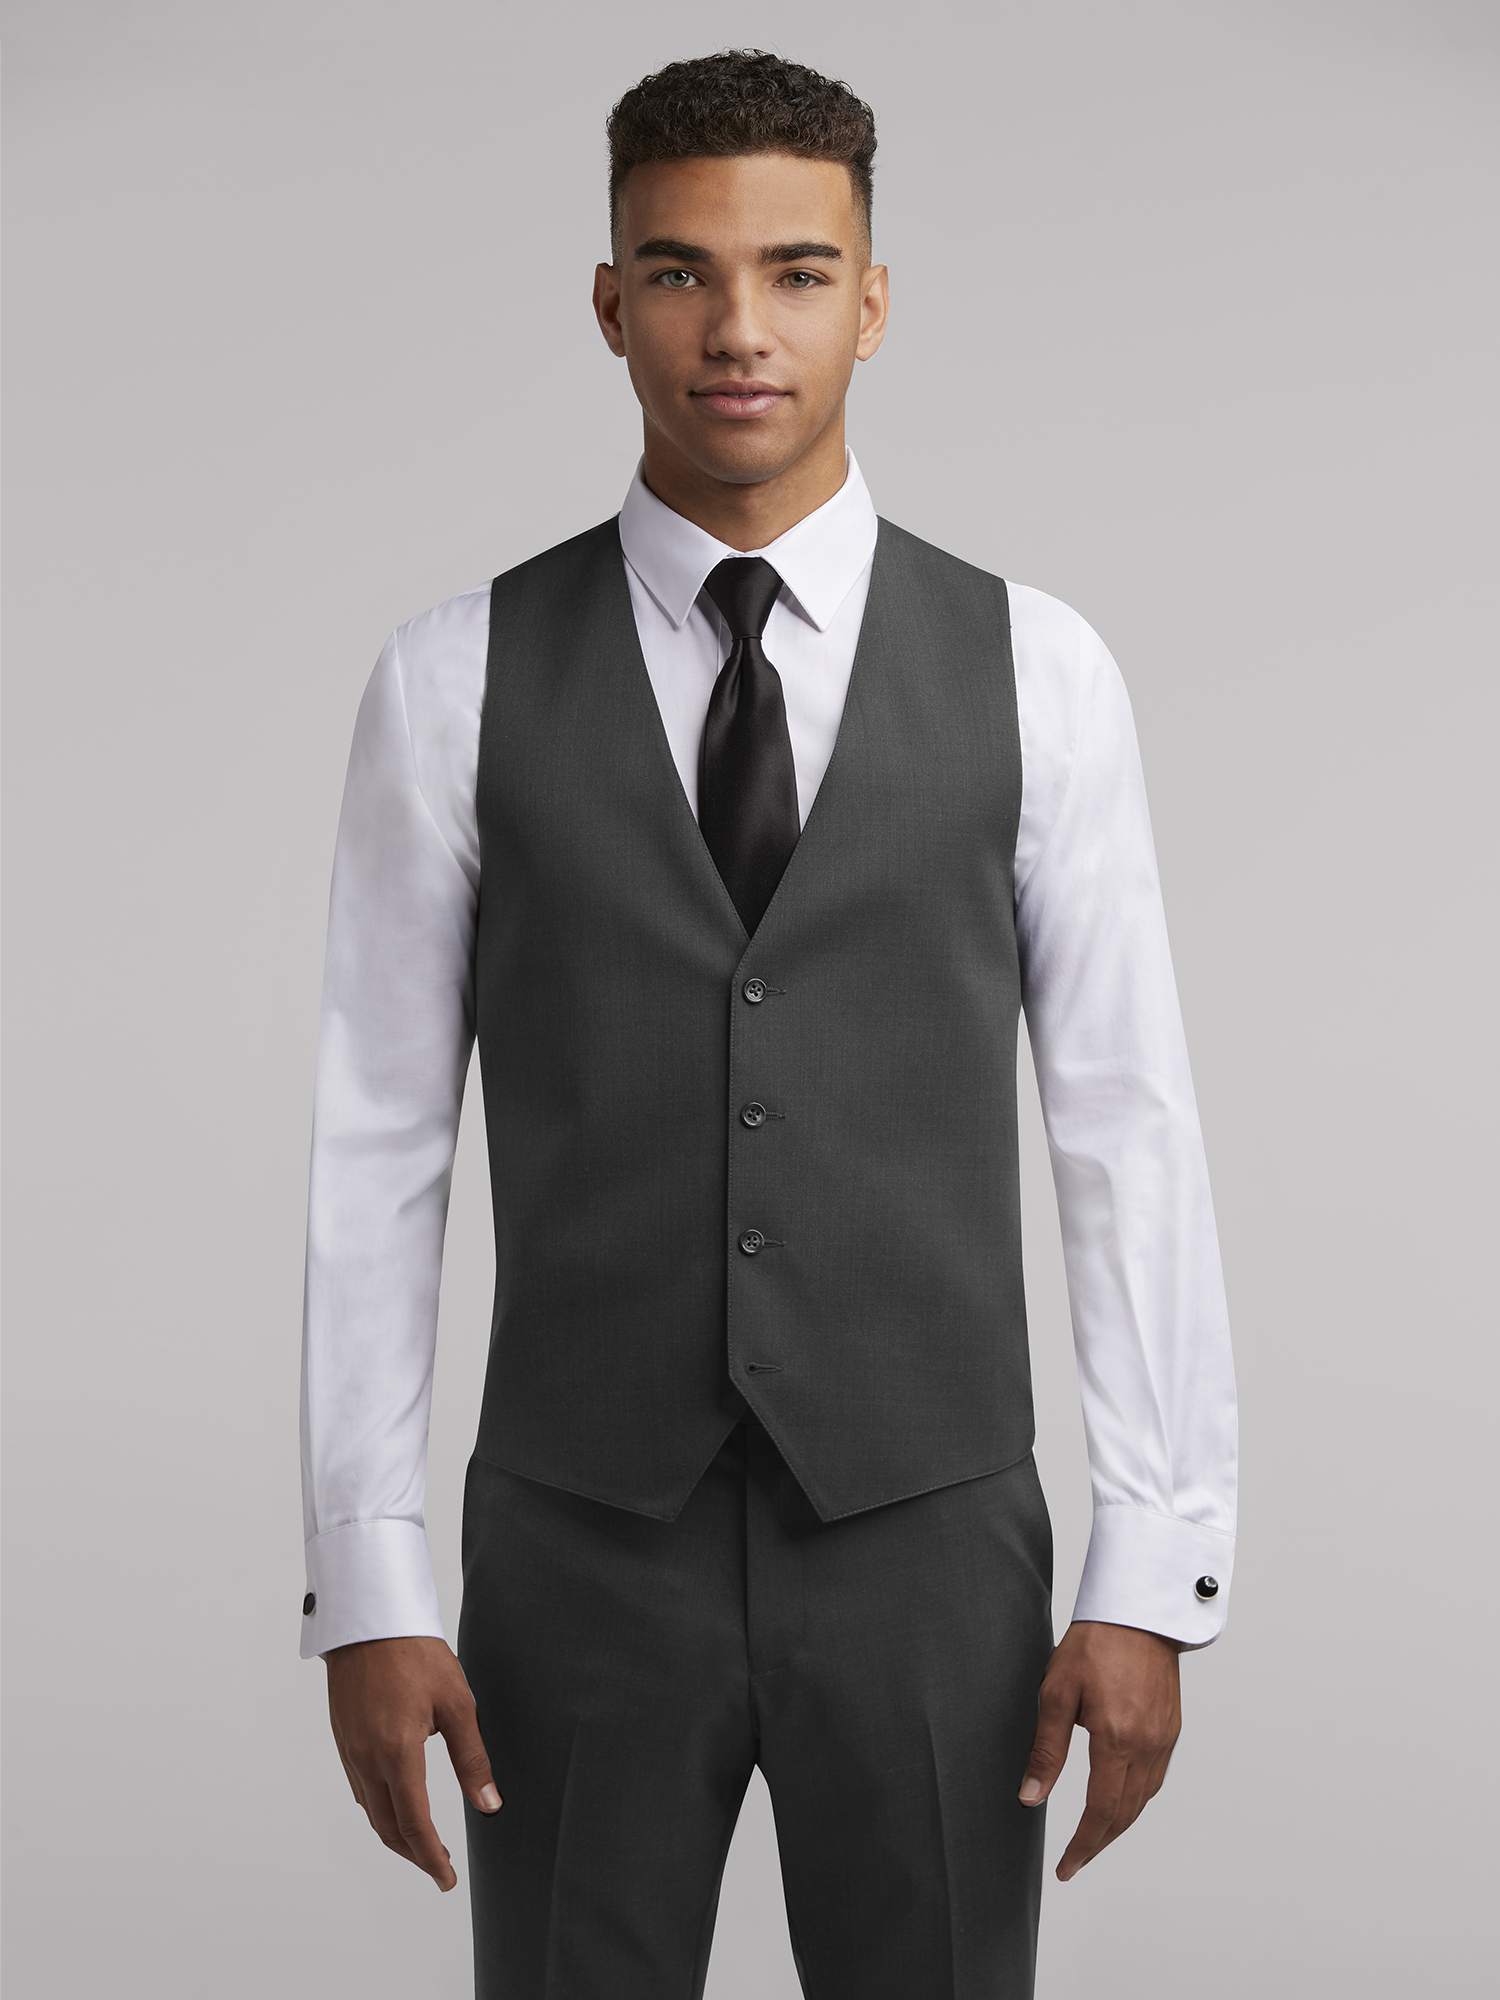 Grey Suit w/ Black Vest [+] - Roblox